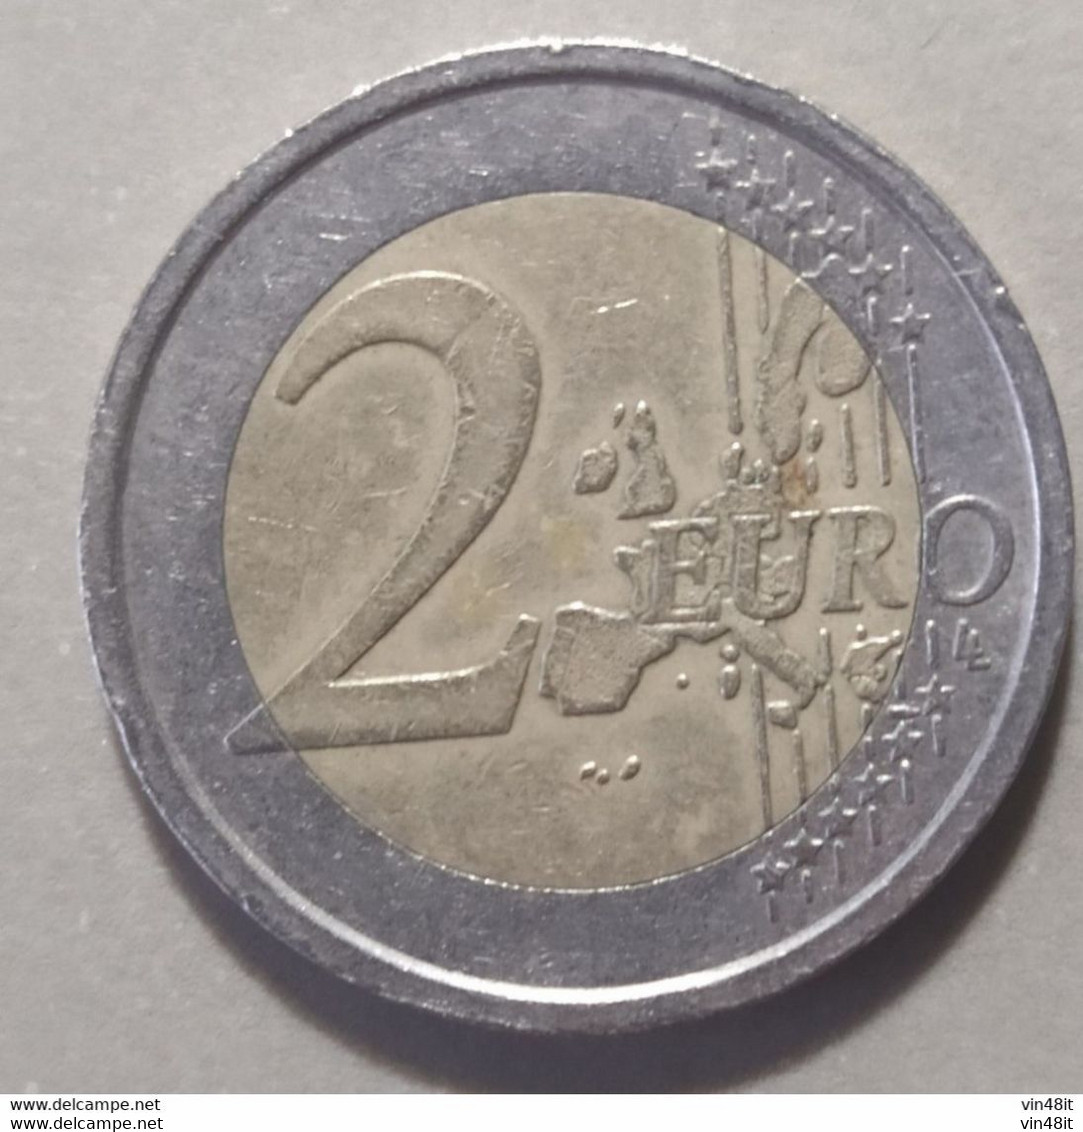 2009 -  SLOVENIA - MONETA IN EURO -  (COMMEMORATIVA)  DEL VALORE DI 2,00  EURO -  USATA- - Slovenia